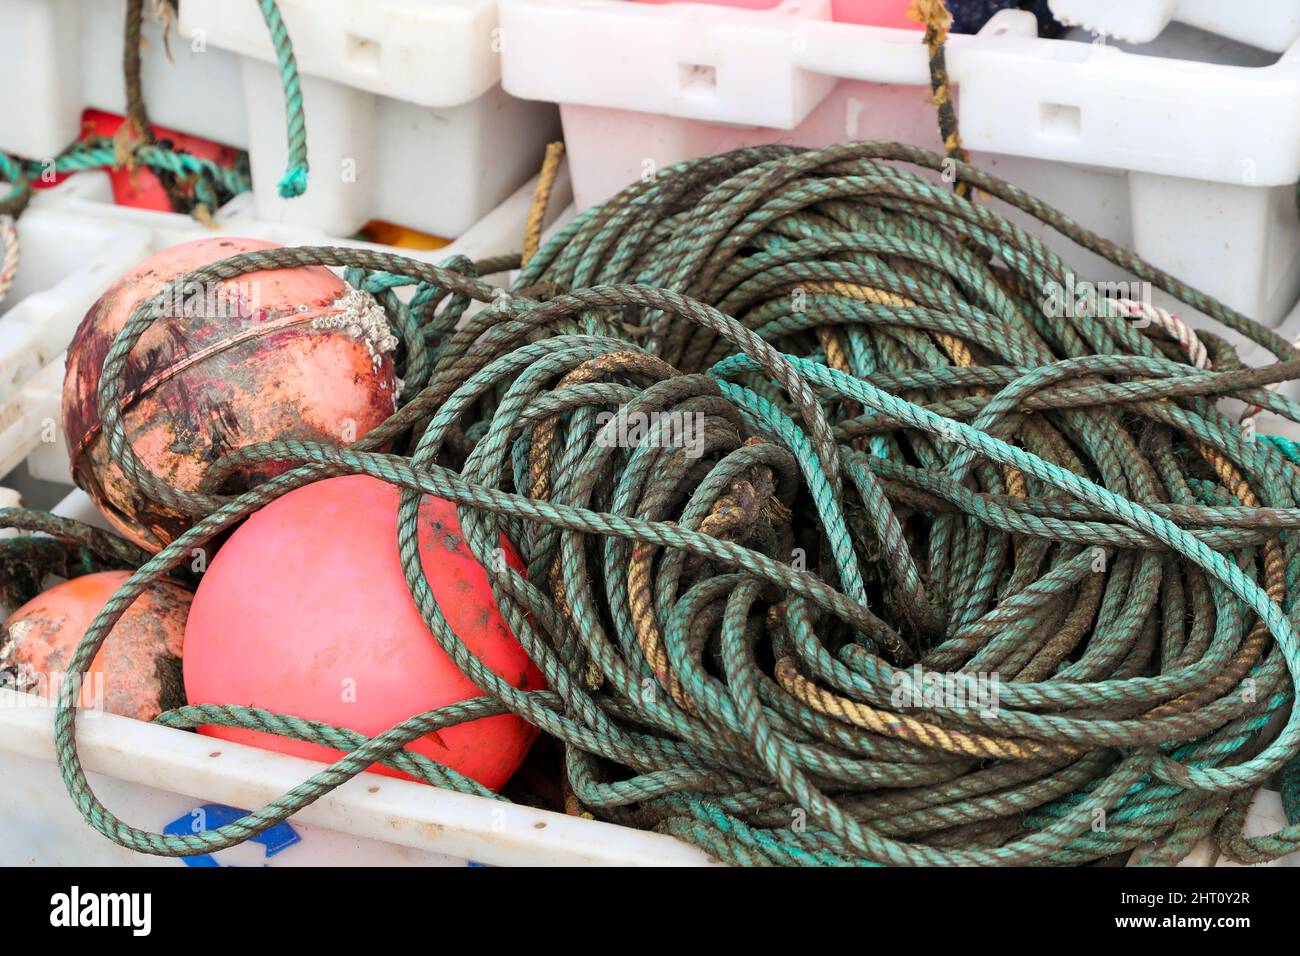 Des caisses à poissons, des cordes et des flotteurs de pêche utilisés par les pêcheurs comme équipement sur leurs chalutiers. Banque D'Images